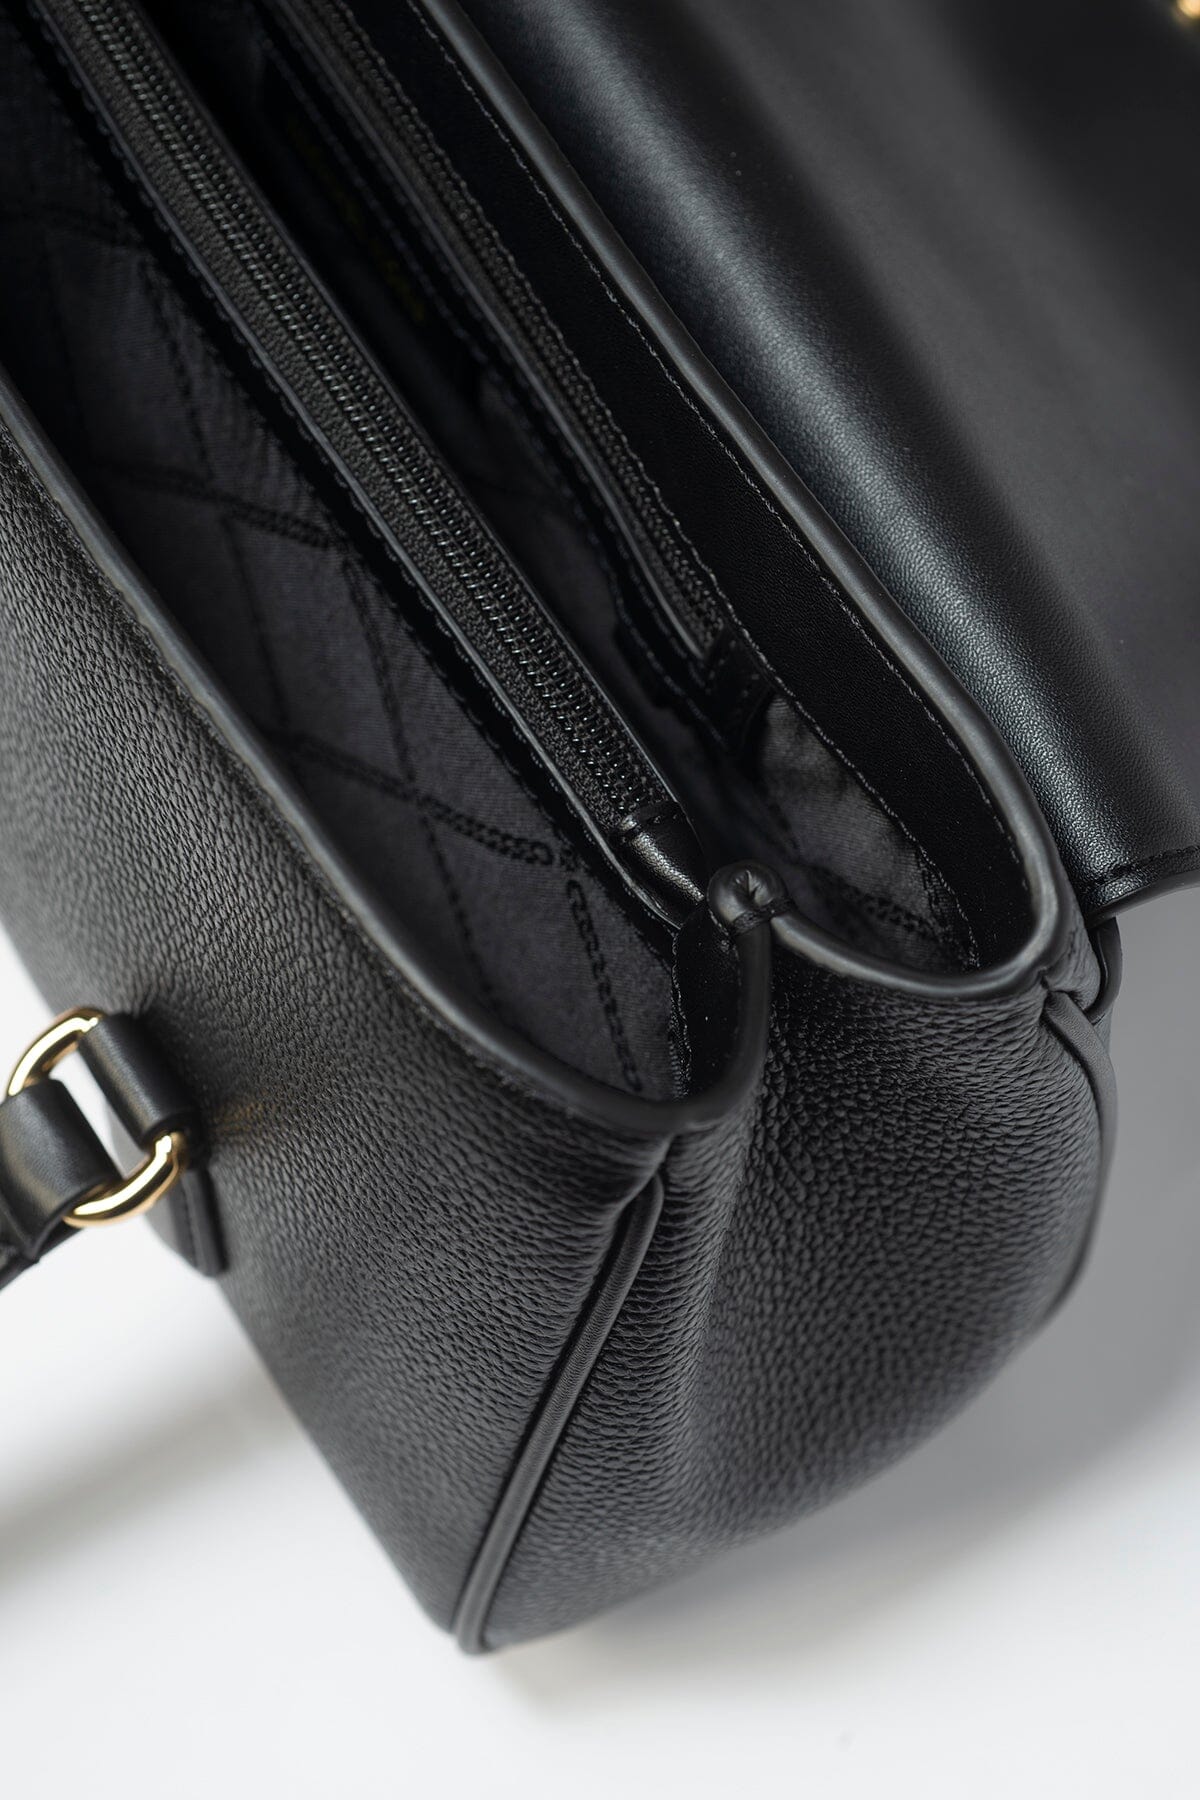 Michael Kors Fleur Medium Leather Shoulder Tote Bag Black Tilbehør